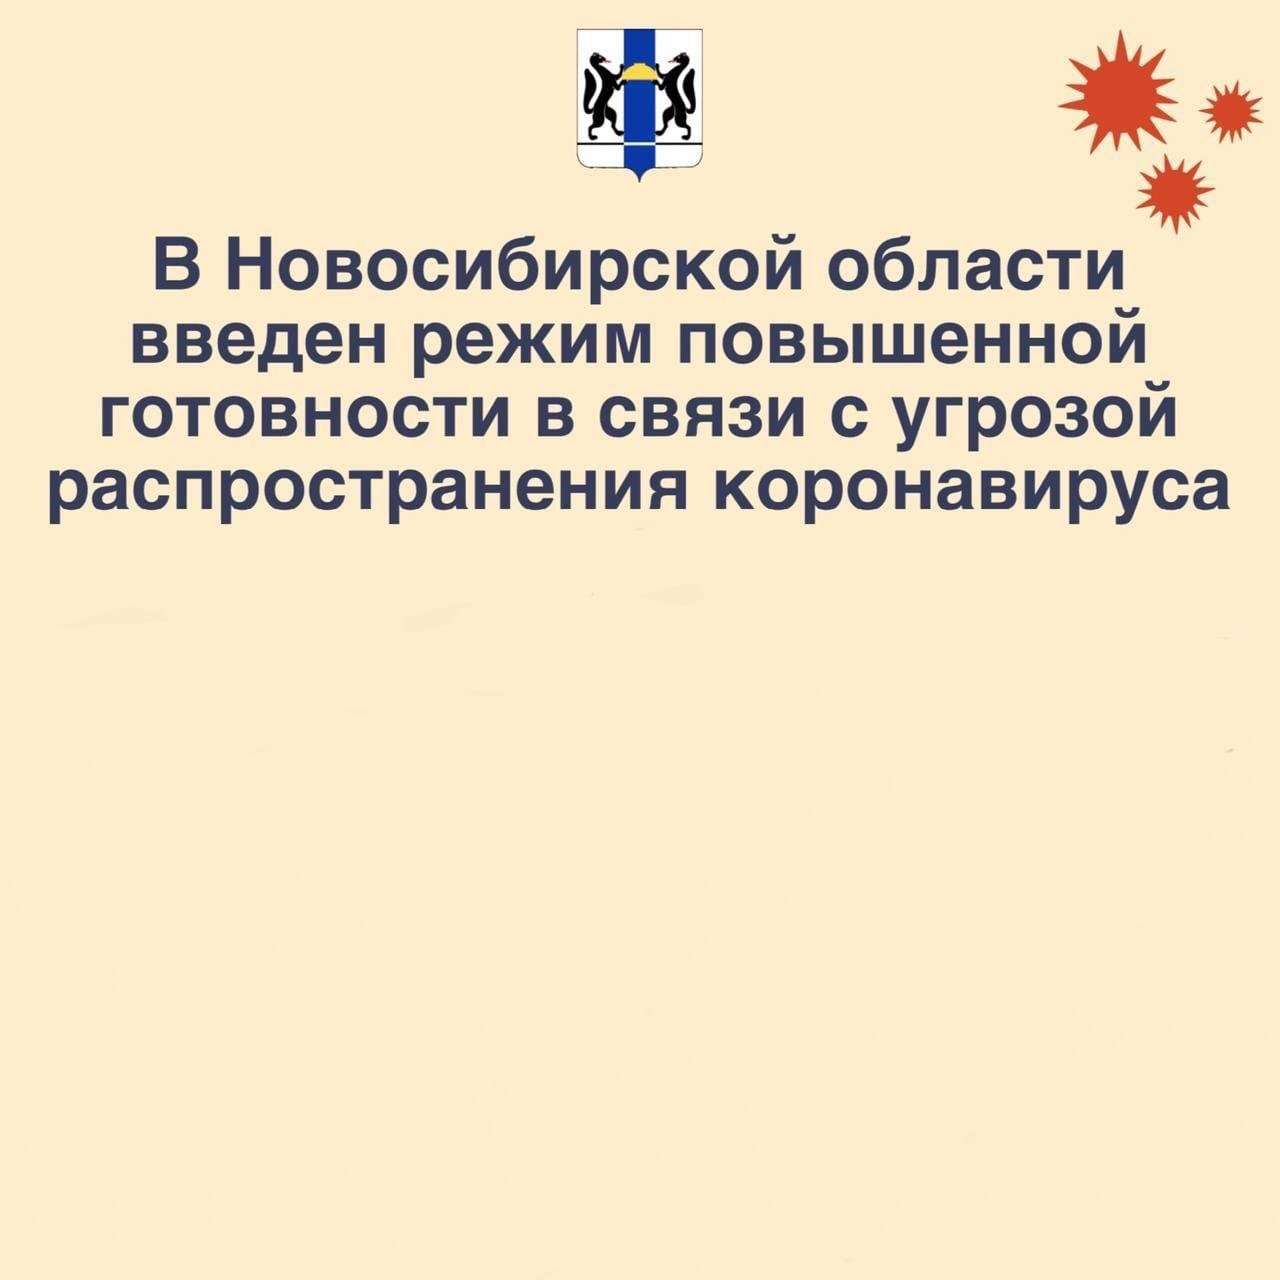 В Новосибирской области введен режим повышенной готовности в связи с угрозой распространения коронавируса